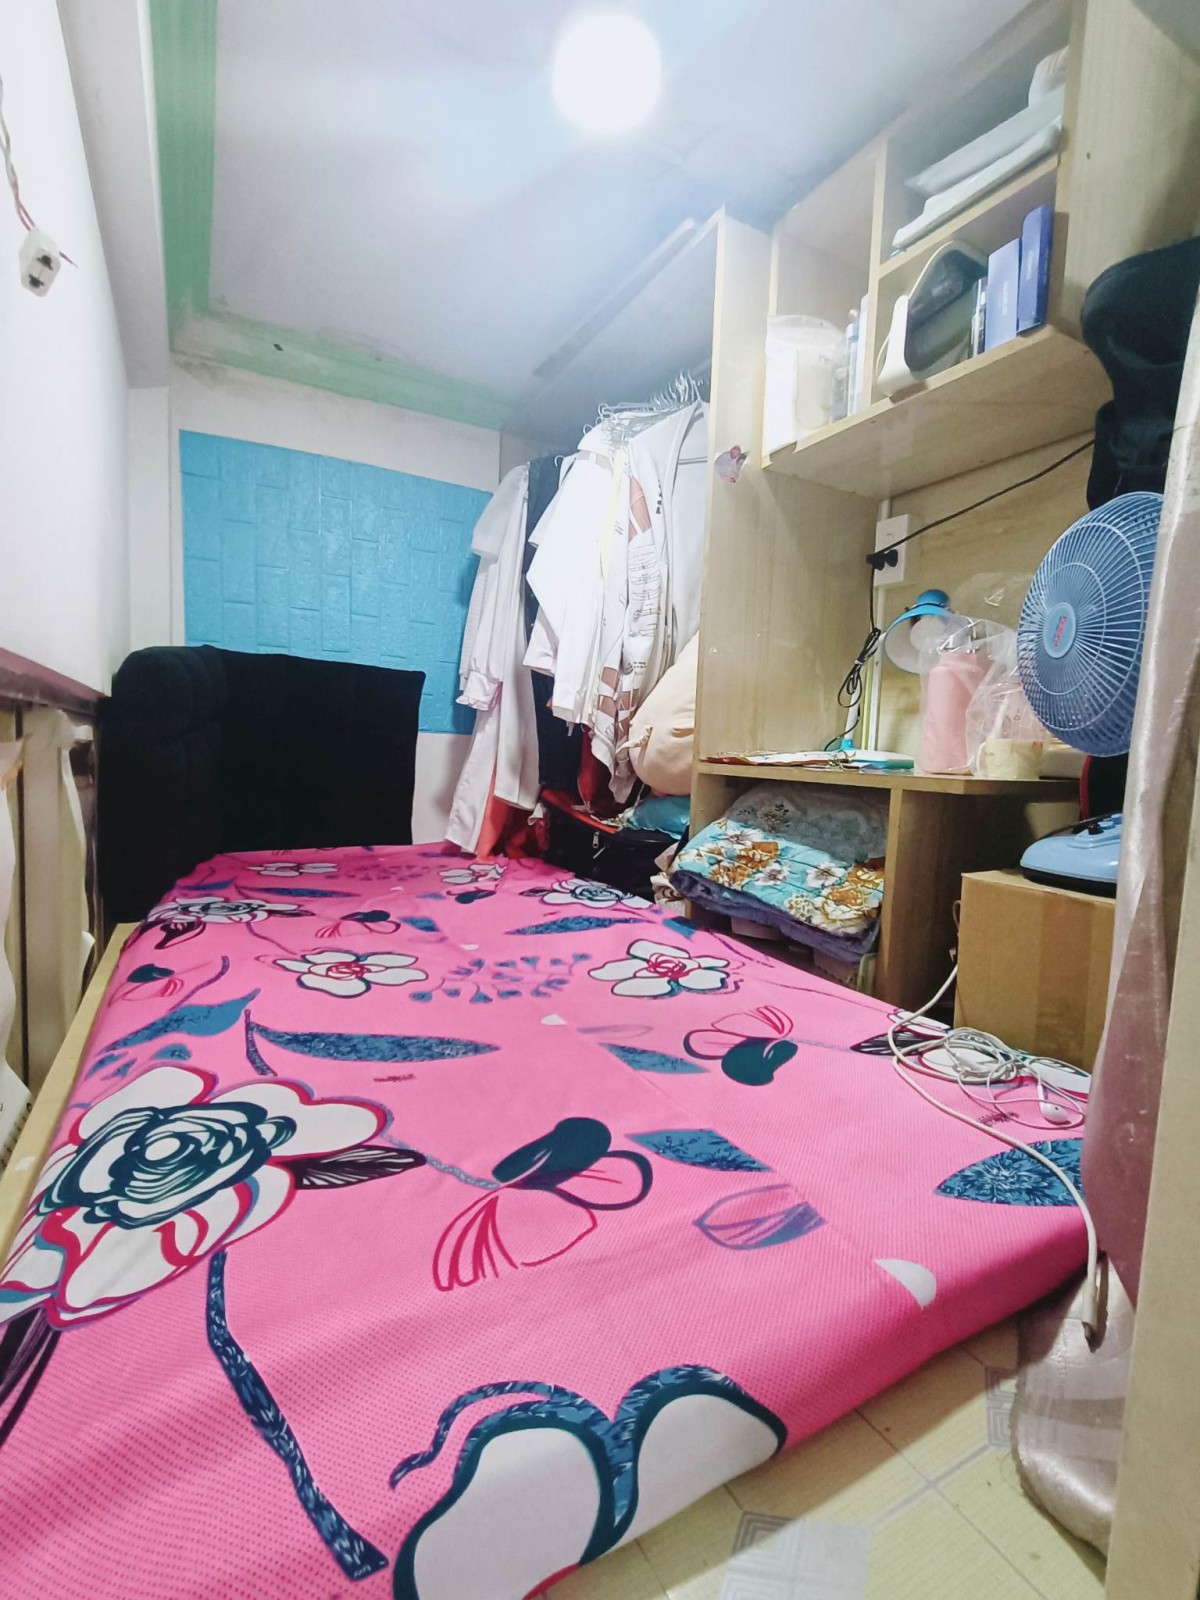 Vì lý do gia đình nênCần Pass sleepbox cho Nữ ở quận Phú Nhuận